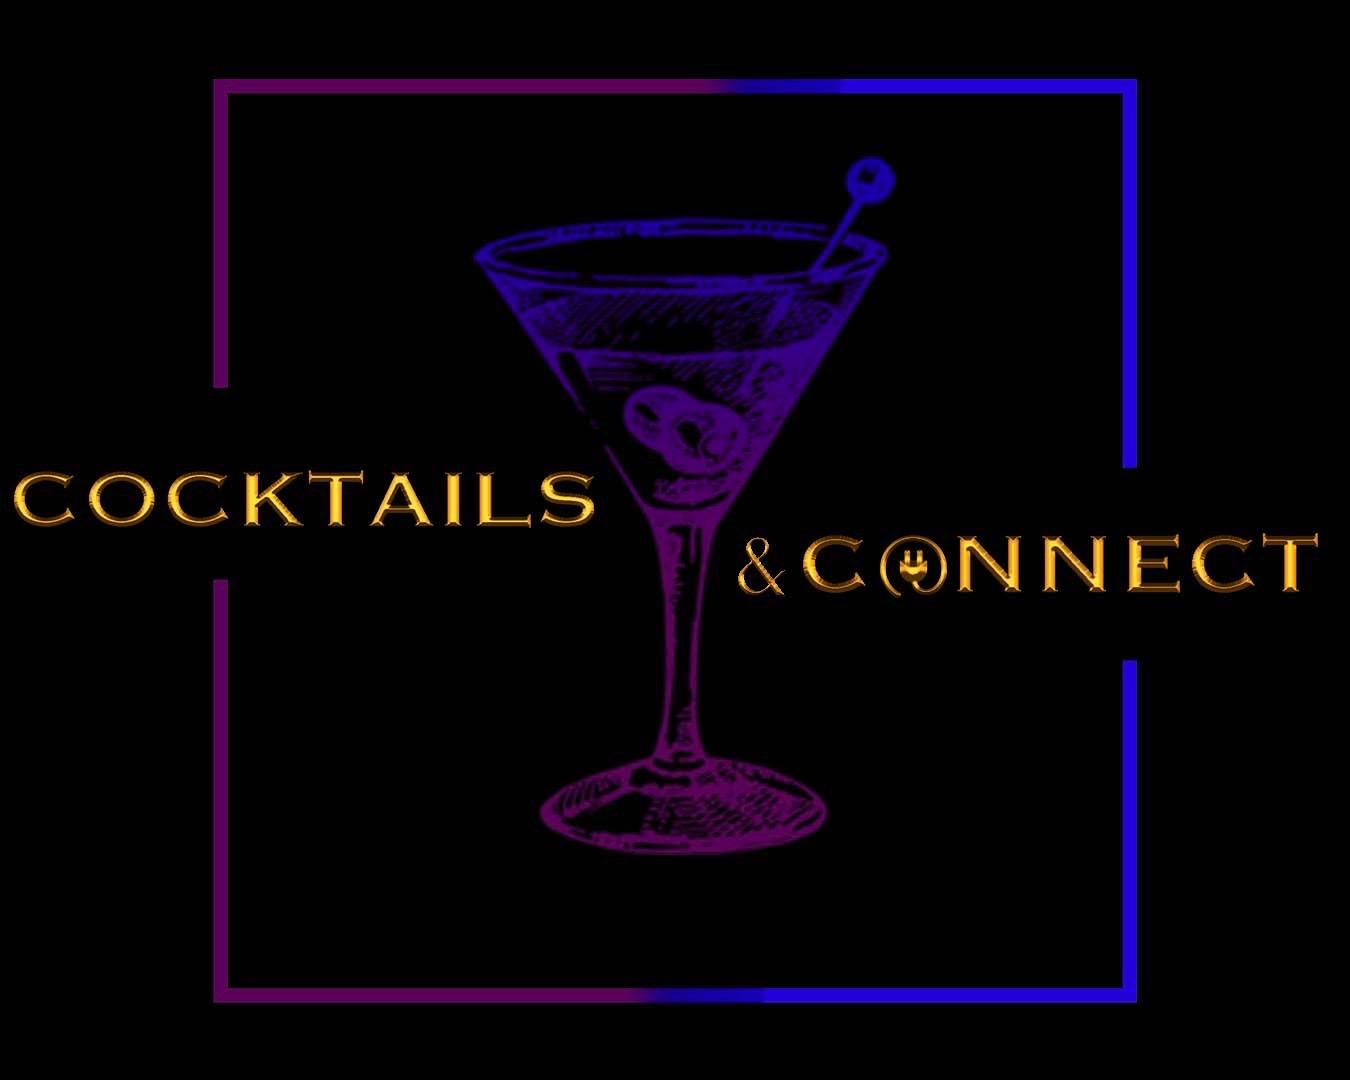 Cocktails & Connect Launch!